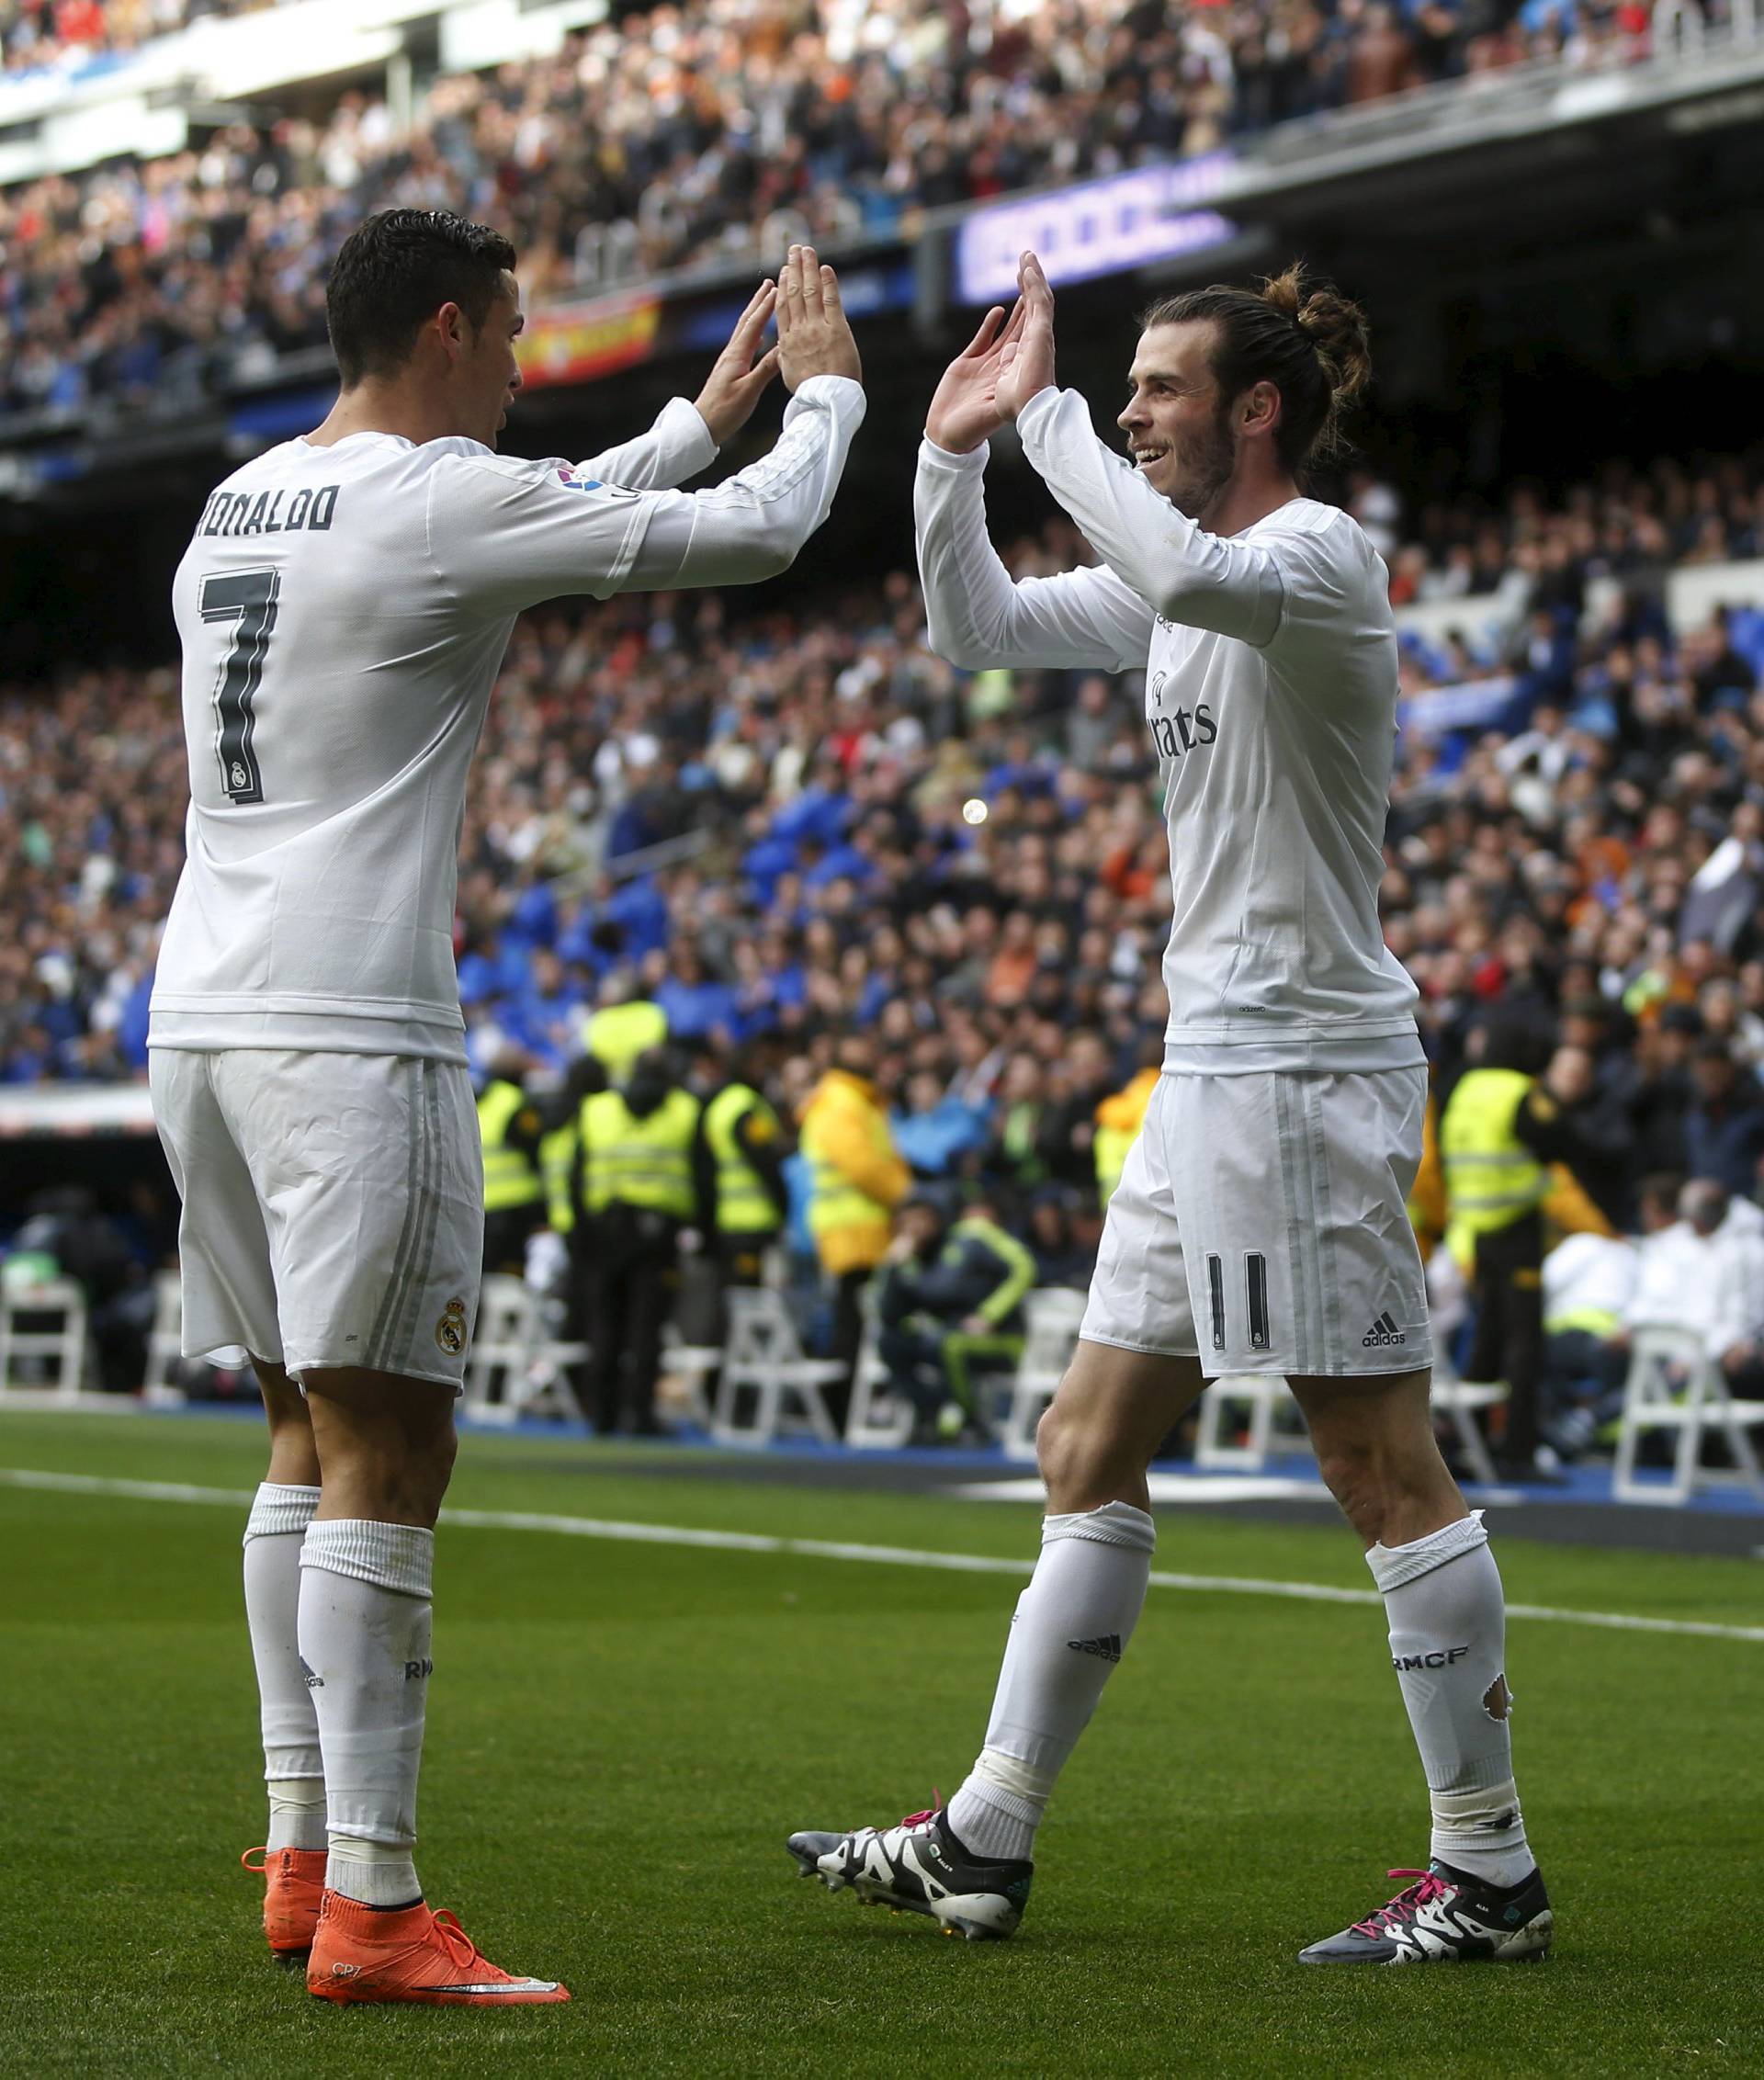 Usporedba: CR je bolji strijelac, a Bale podređeniji timskoj igri